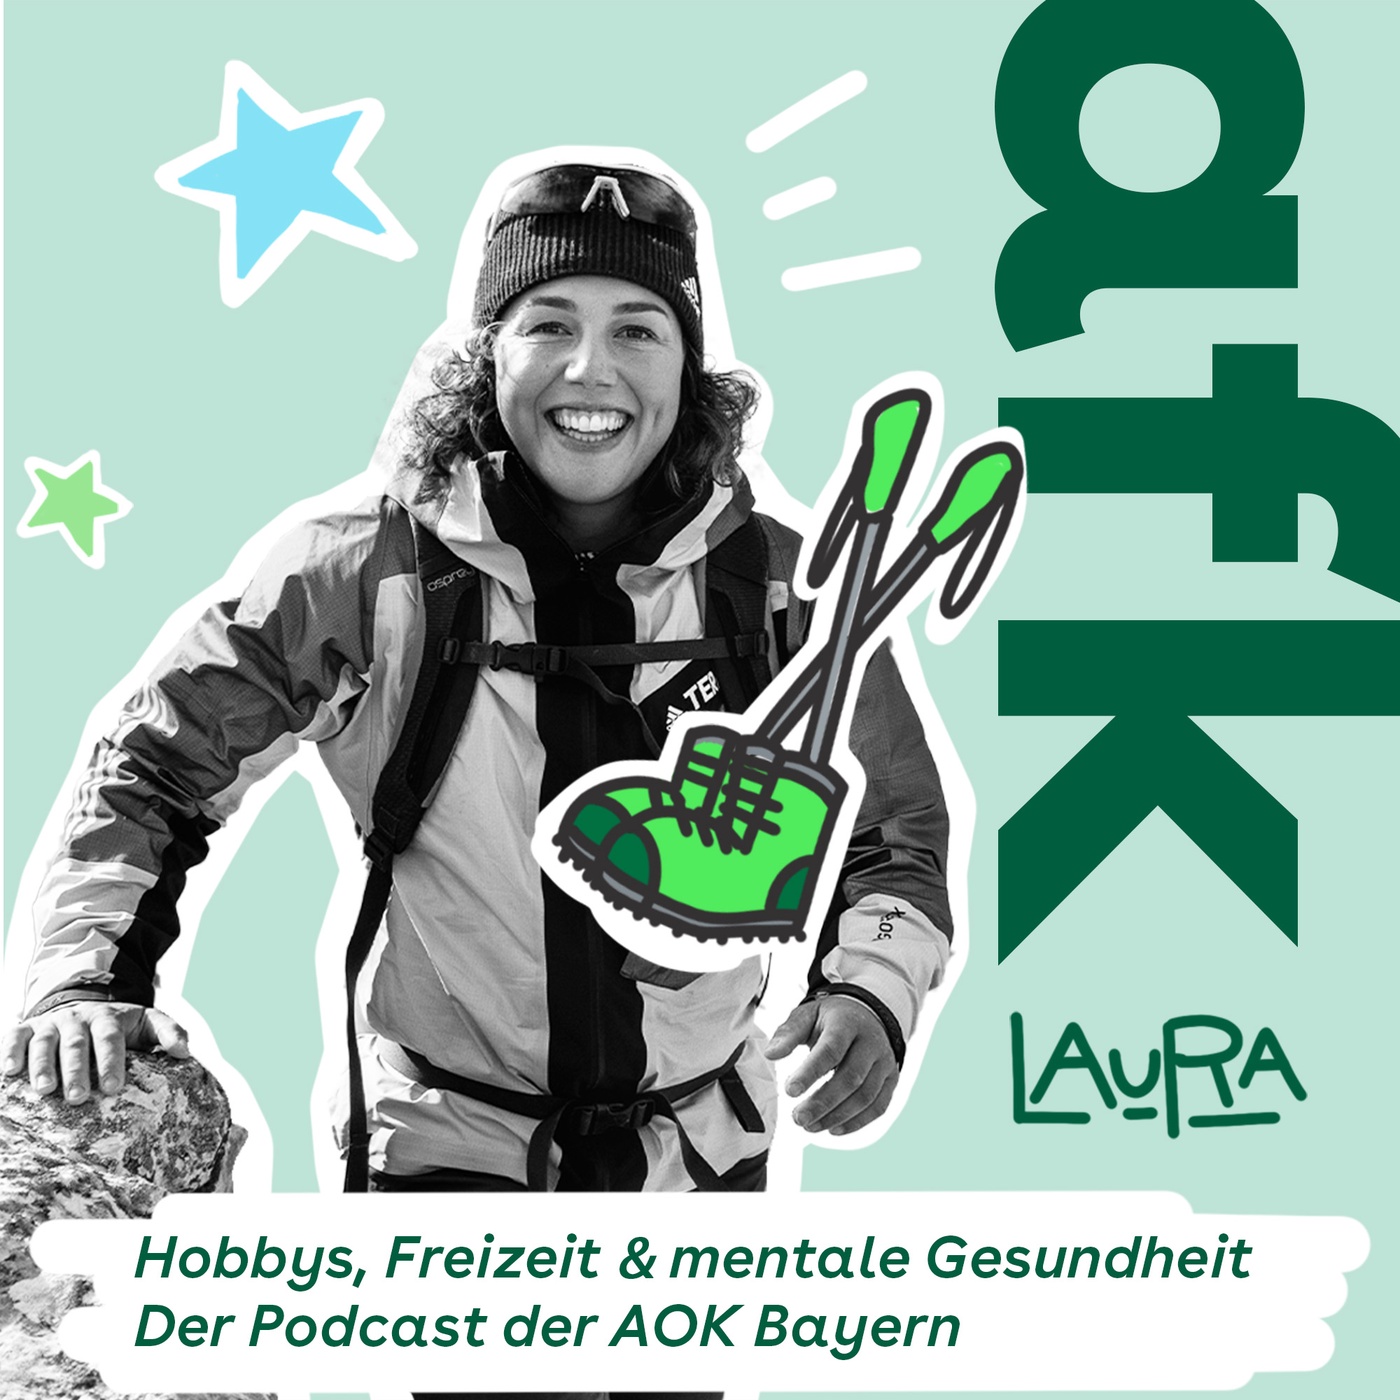 Outdoor-Sport – Olympiasiegerin Laura Dahlmeier und die Liebe zu den Bergen